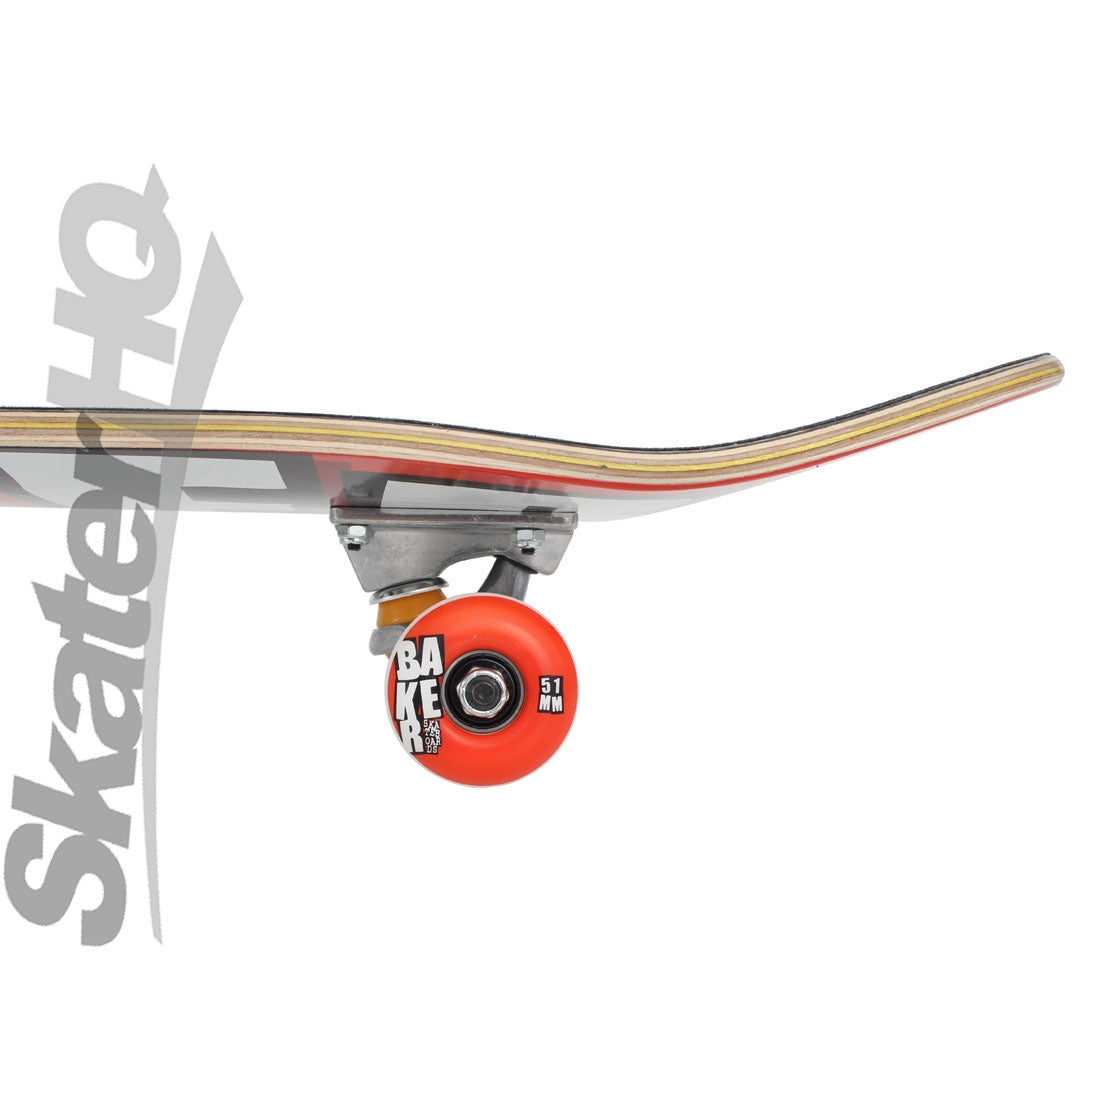 Baker OG White Logo 7.75 Complete Skateboard Completes Modern Street